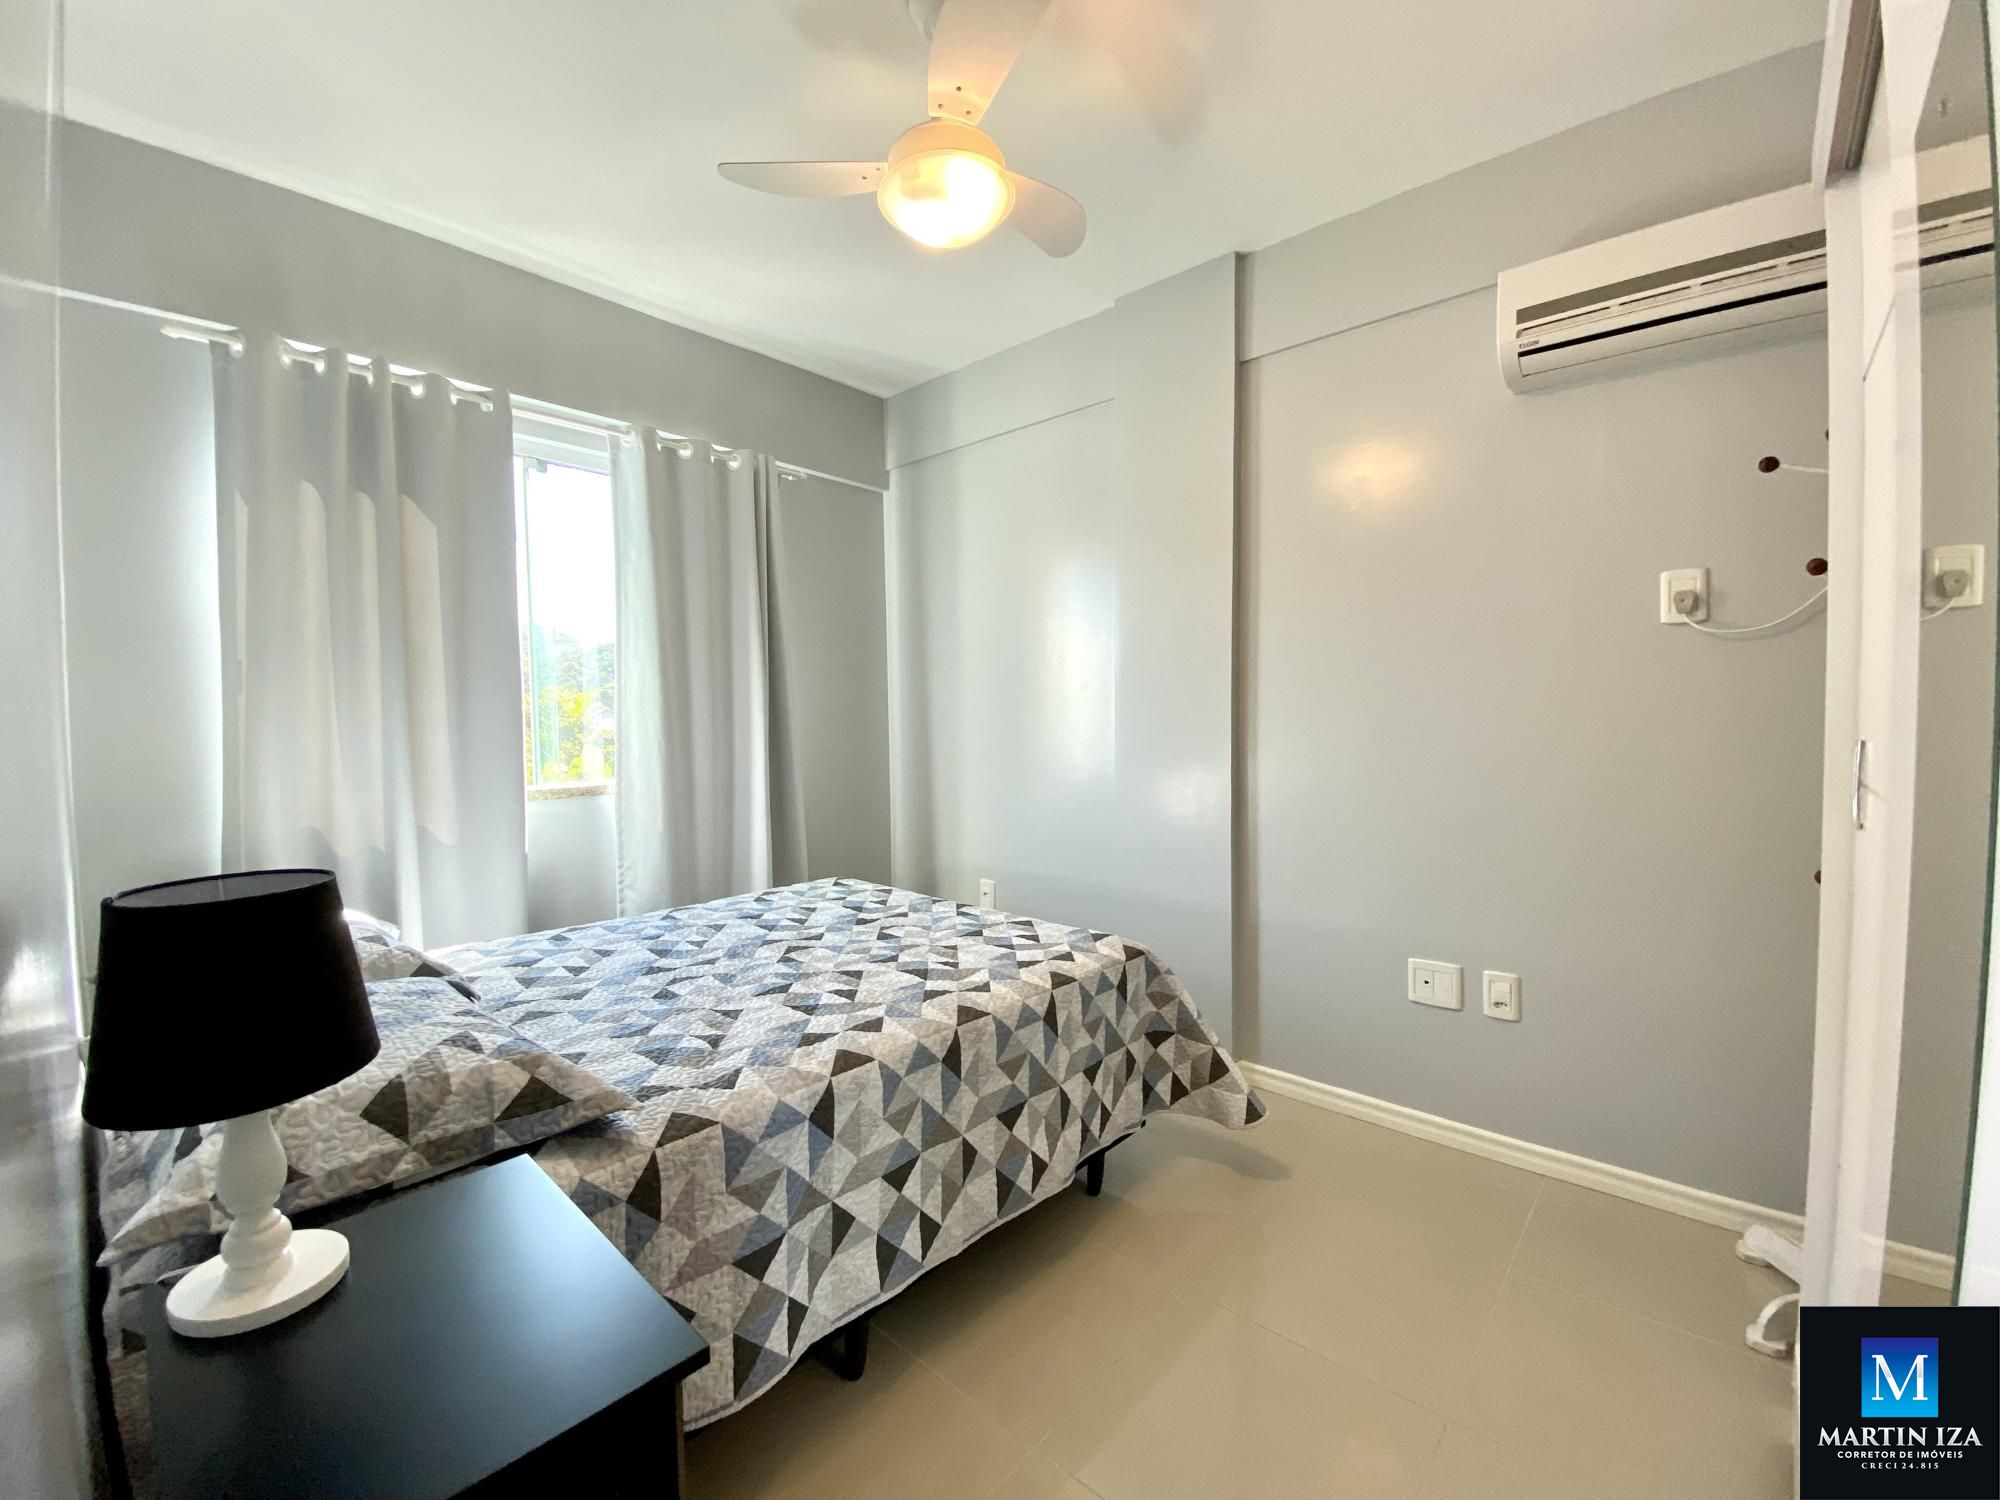 Apartamento com 2 Dormitórios para alugar, 70 m² por R$ 200,00